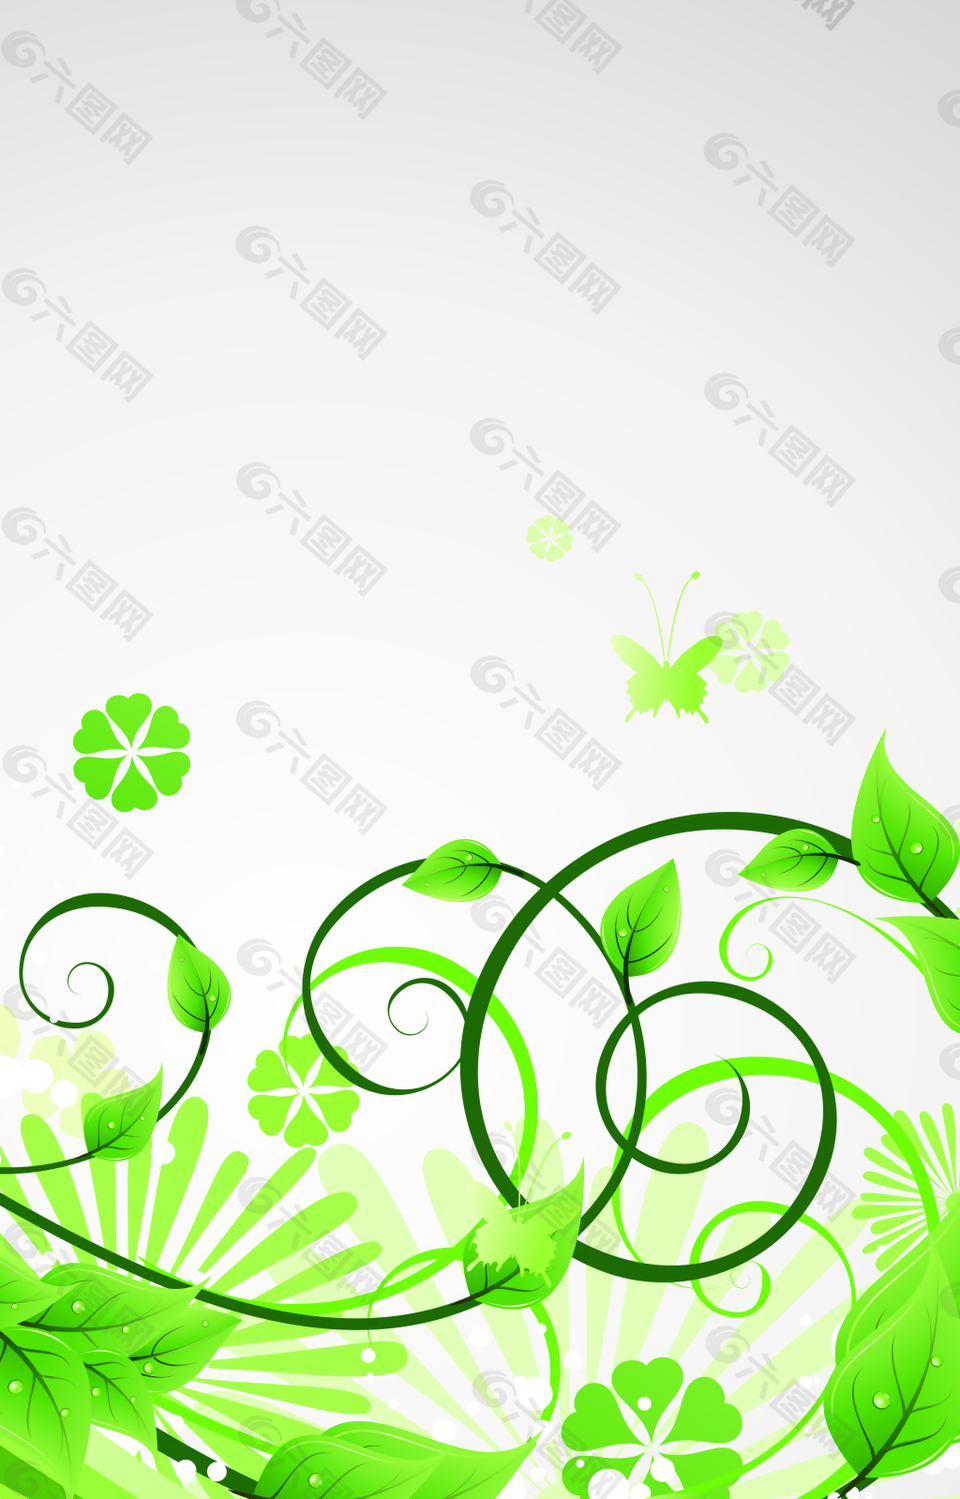 绿色花朵和绿叶背景素材